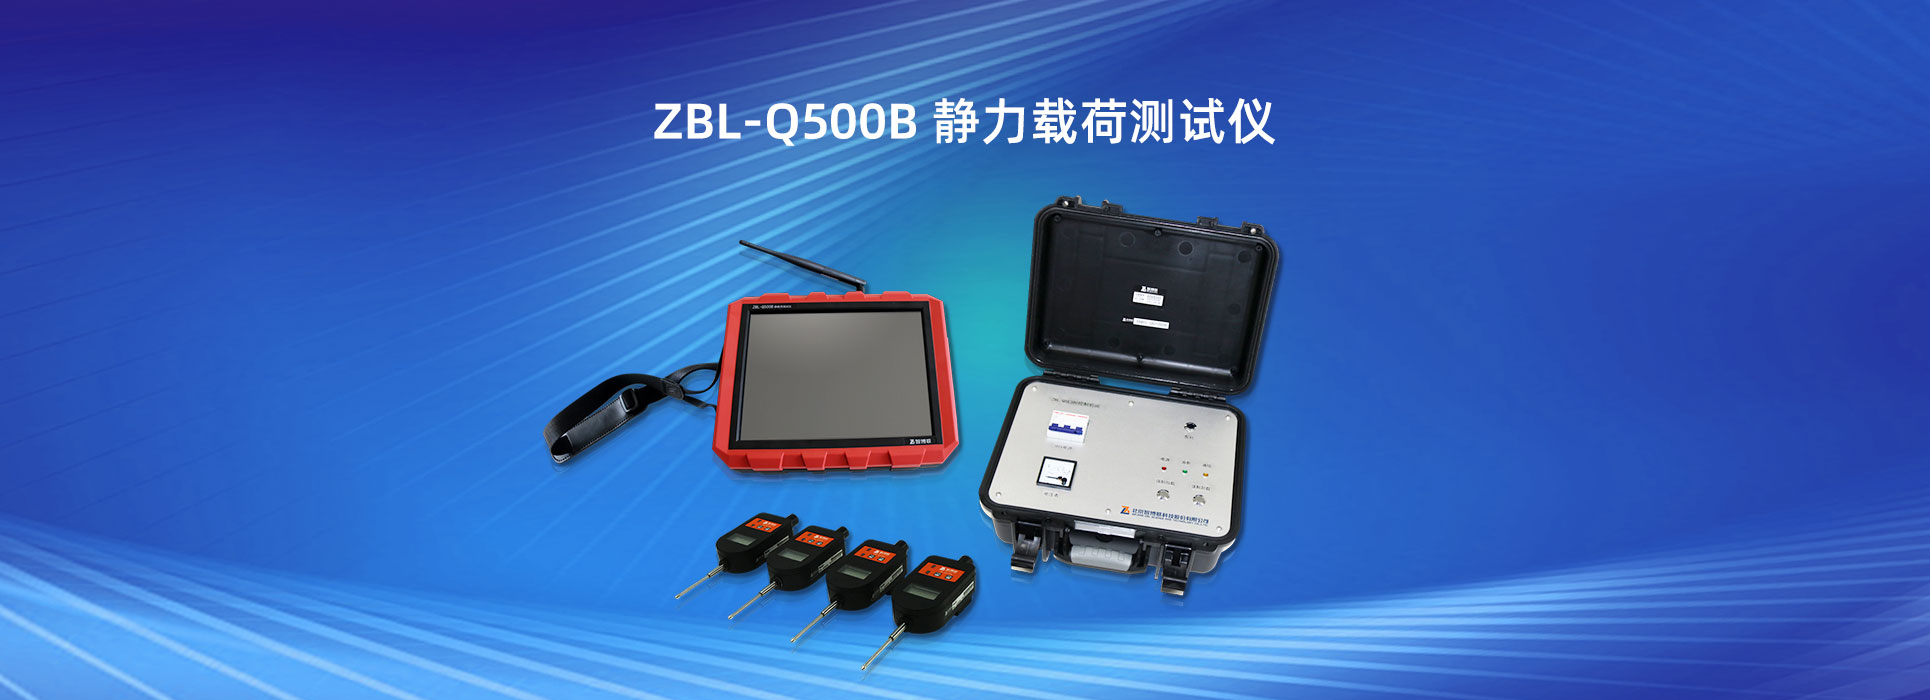 ZBL-Q500B 静力载荷测试仪